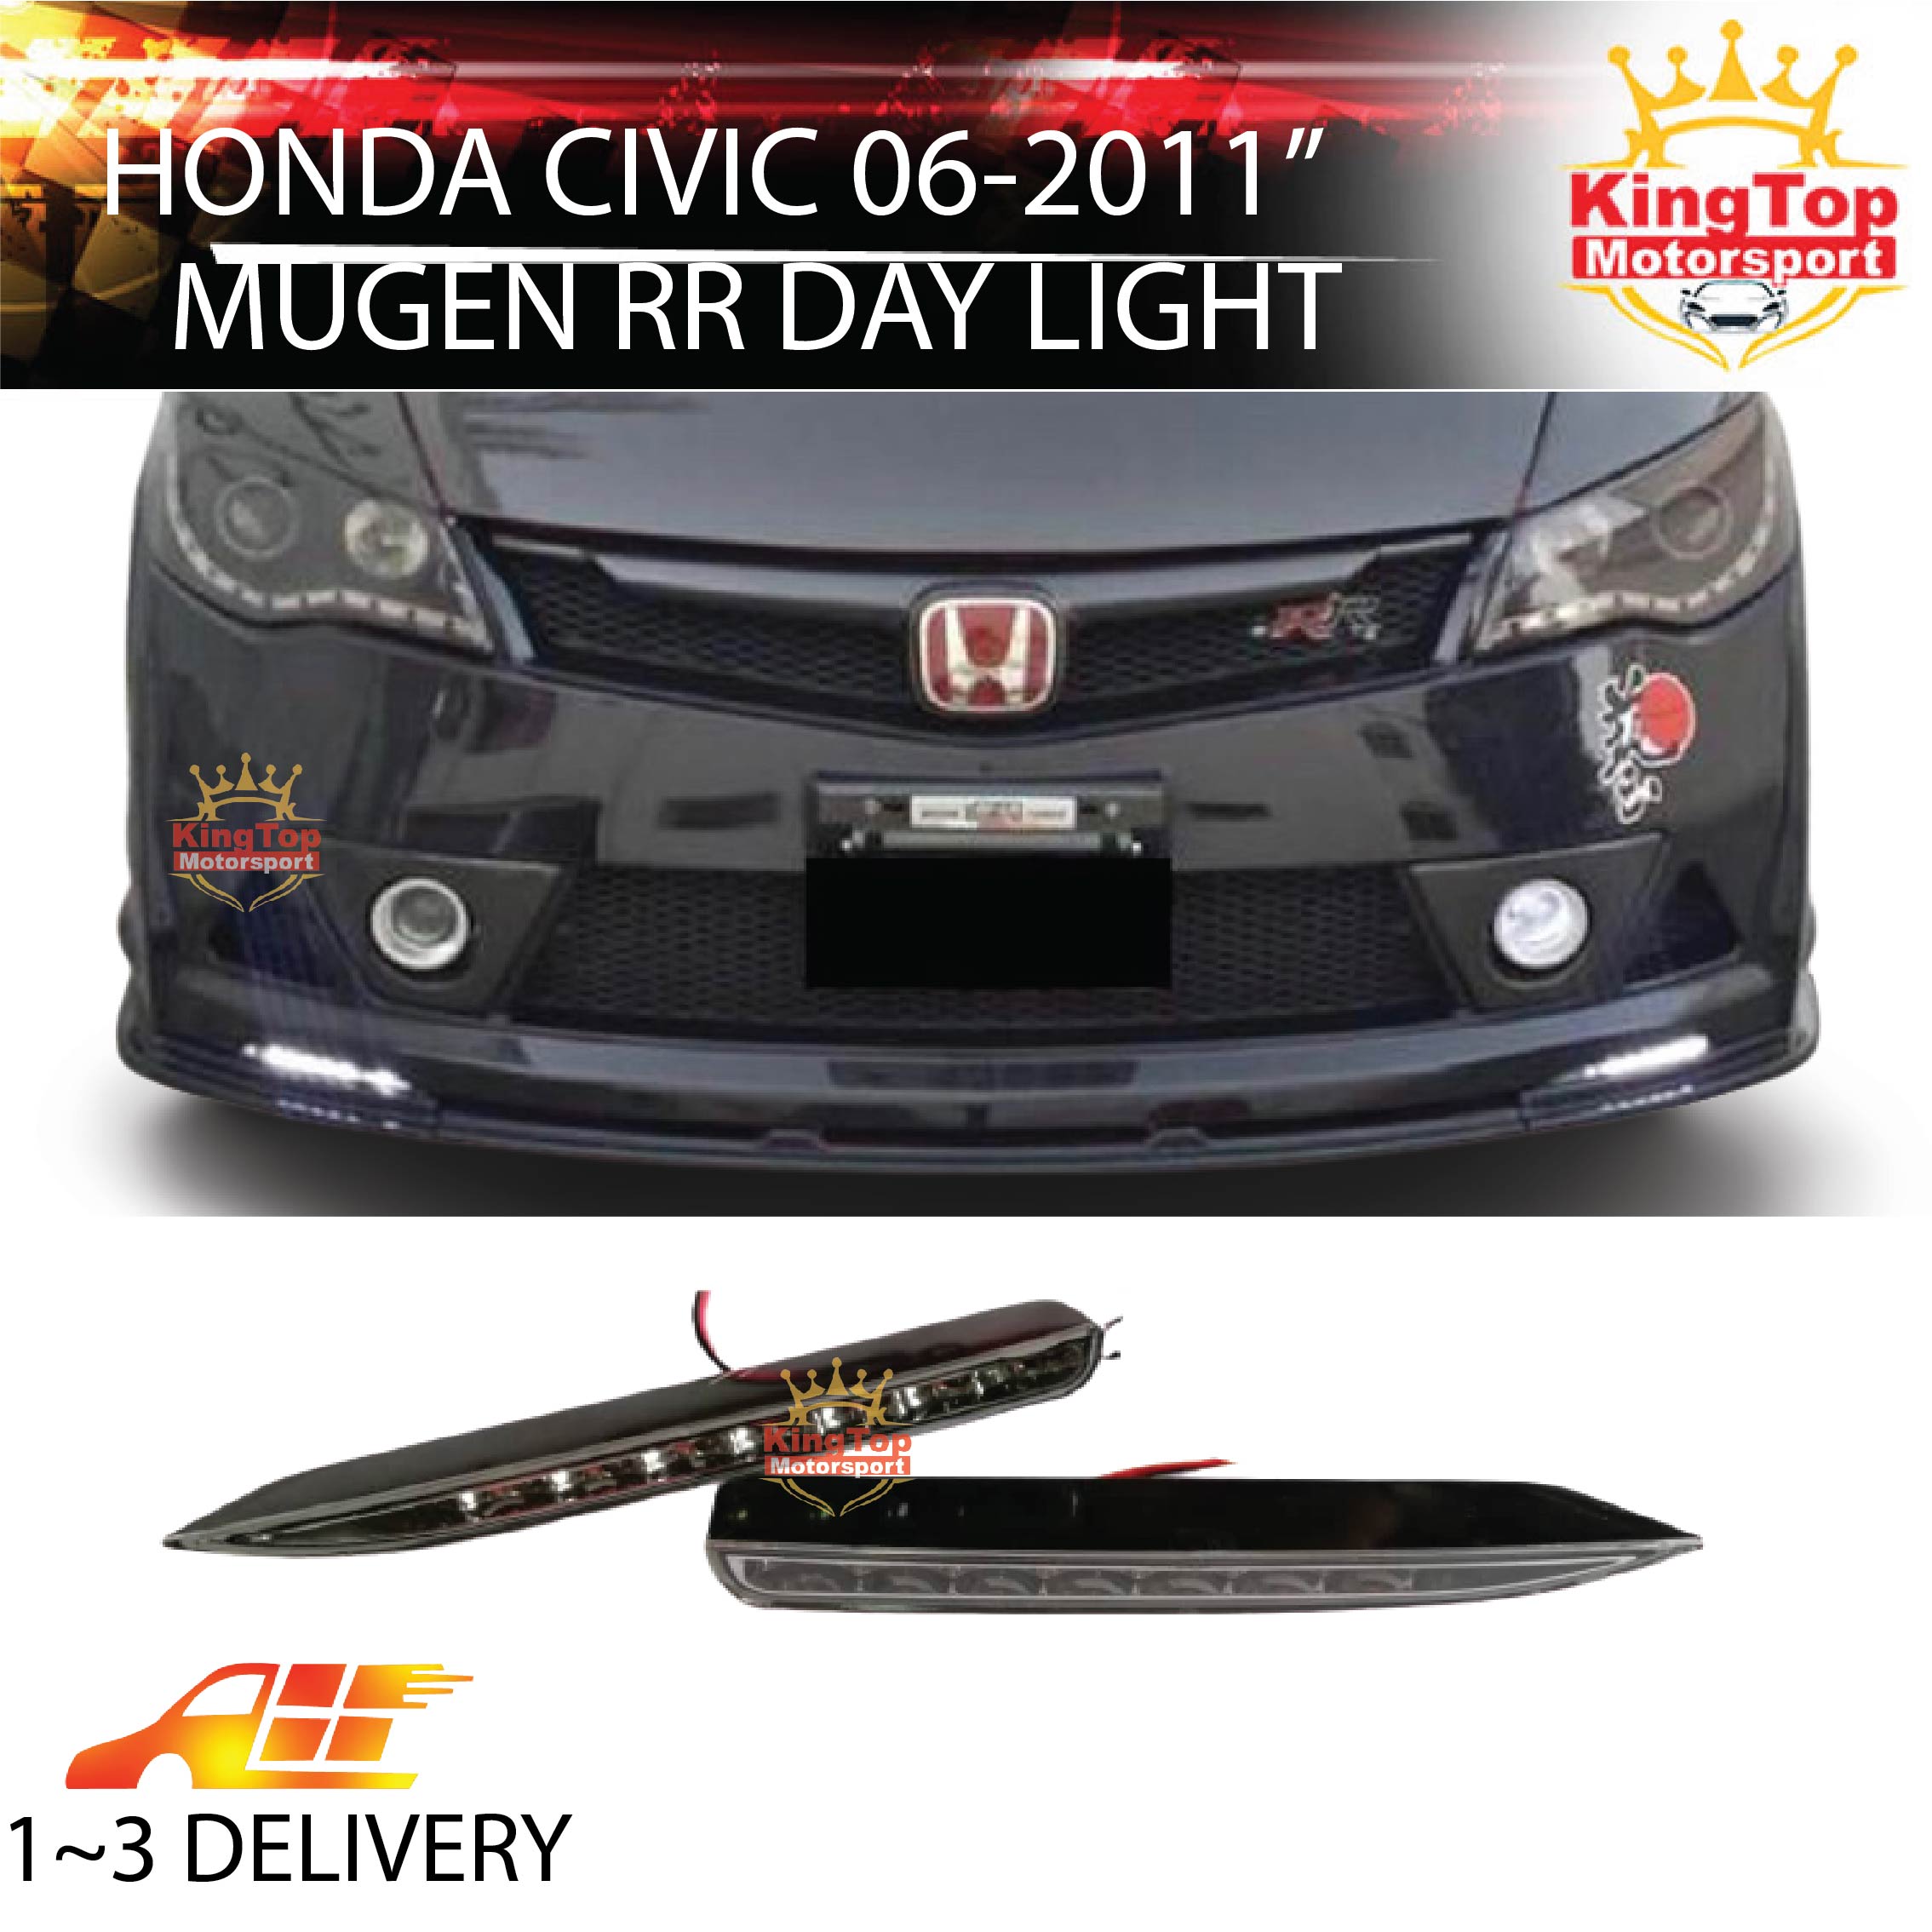 FREE SHIPPING Mugen Honda Civic FD2 Mugen RR Rear Bumper Light Lamp LED 2006-2011 